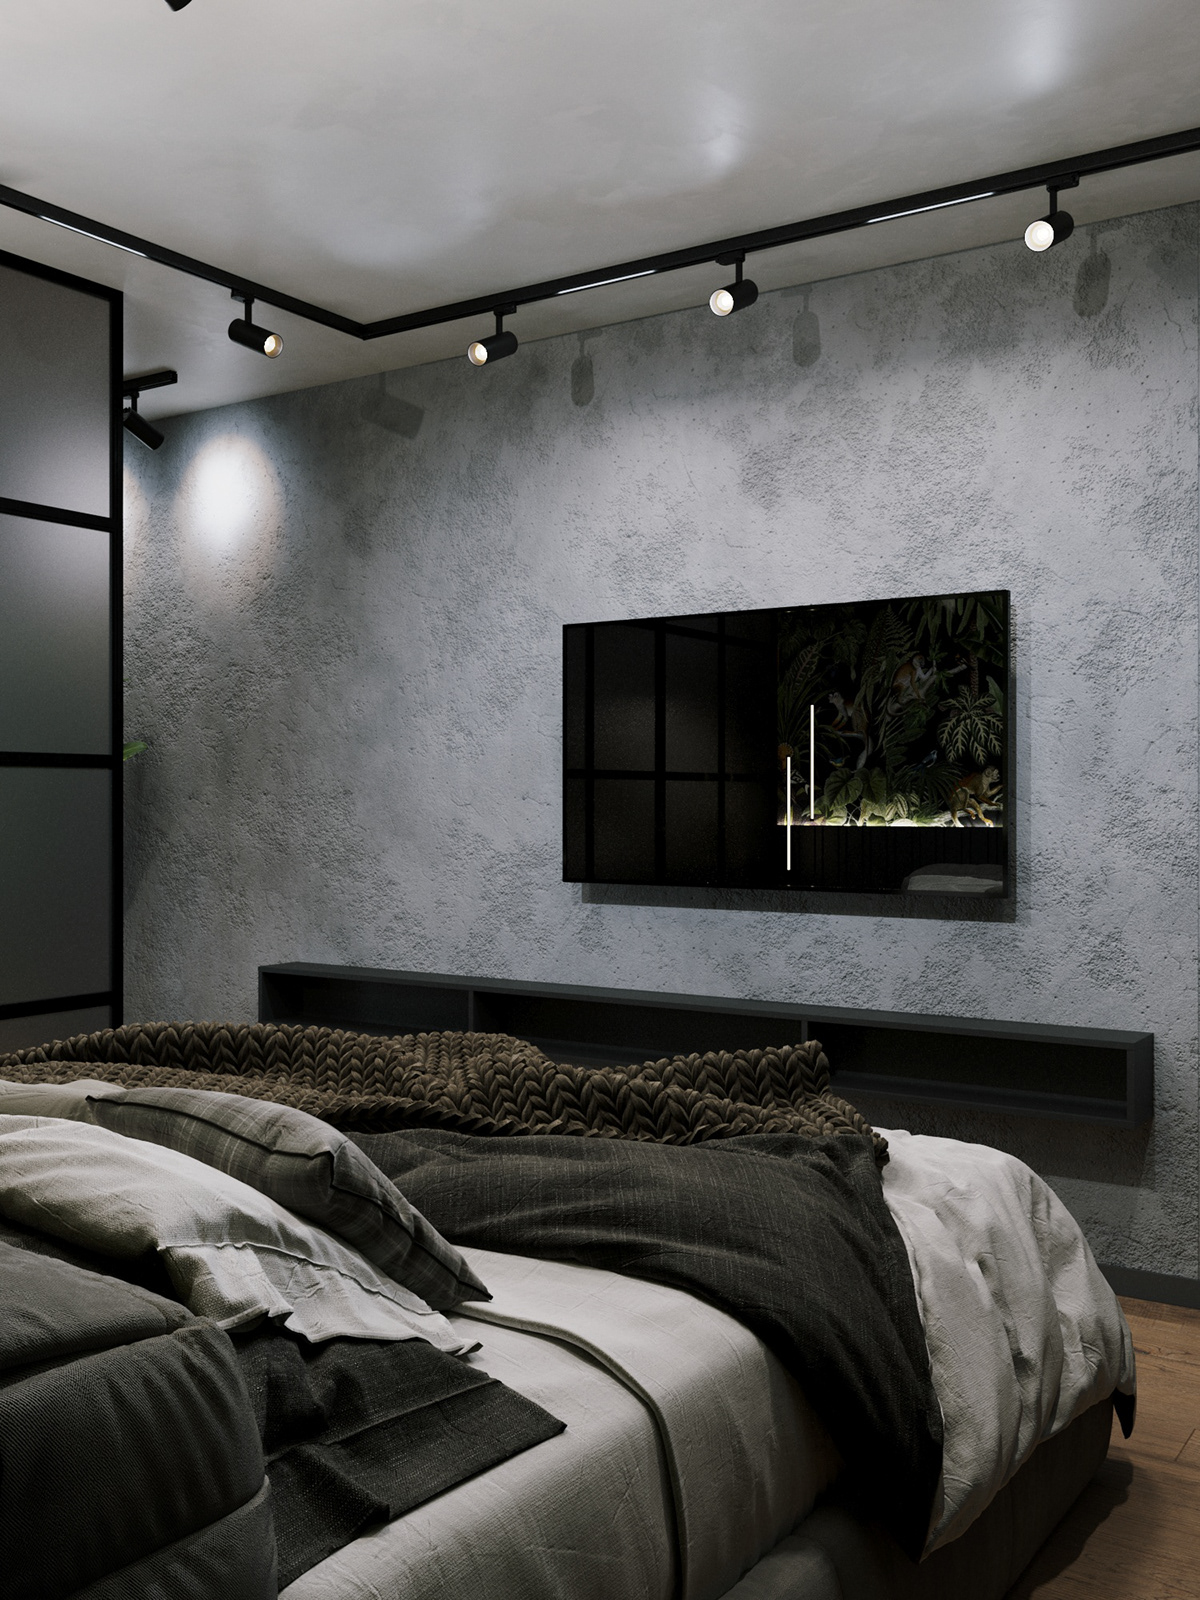 дизайн дизайн интерьера спальня bedroom Interior design дизайн спальни